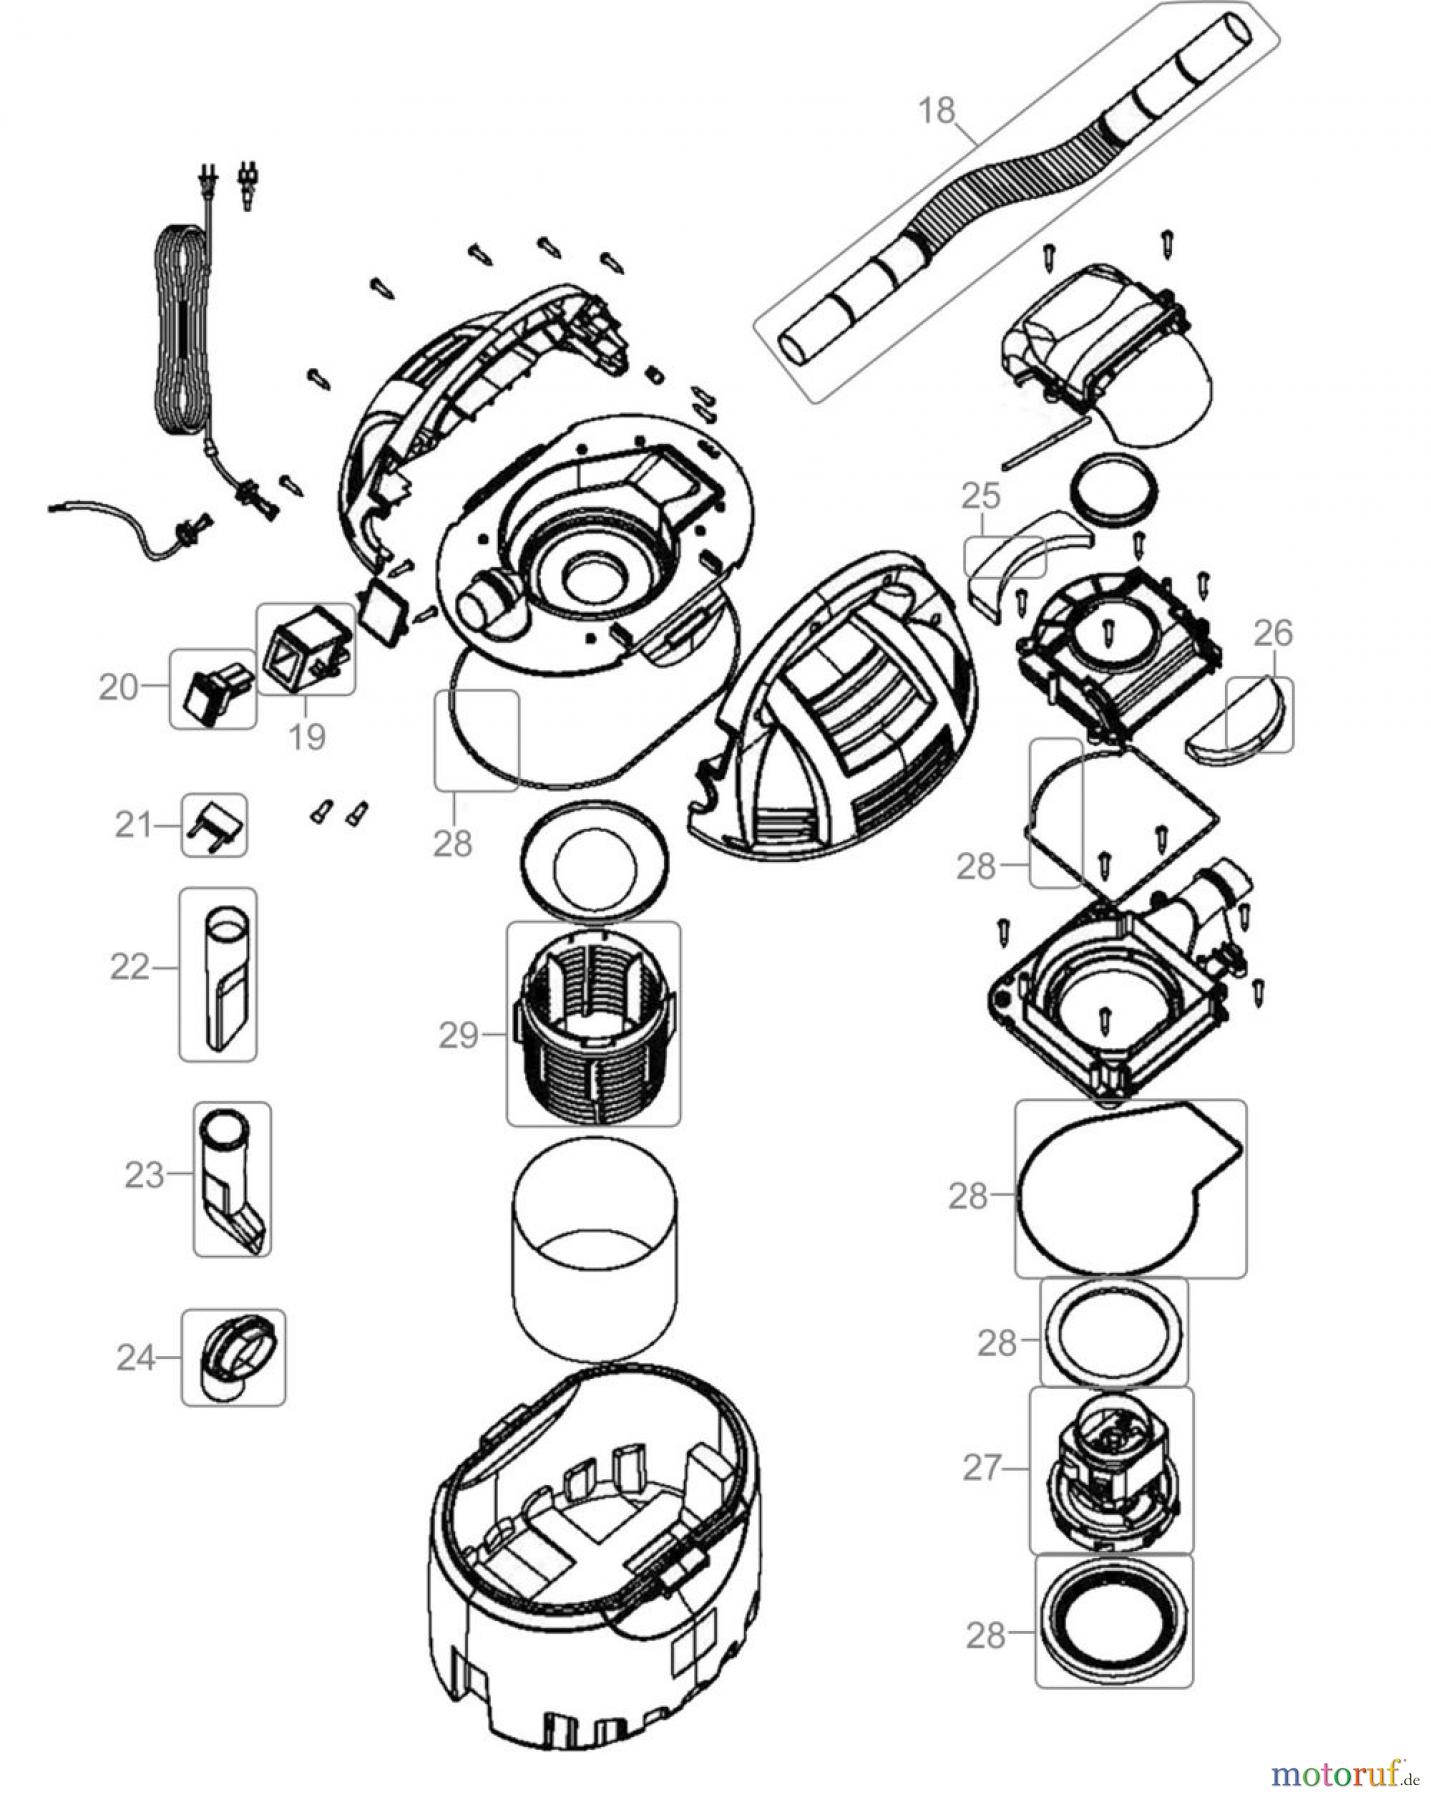  Güde Reinigungsgeräte Hochdruckreiniger SAUGER & HOCHDRUCKREINIGER 2 IN 1 - 86031 FSL86031-01 Seite 2